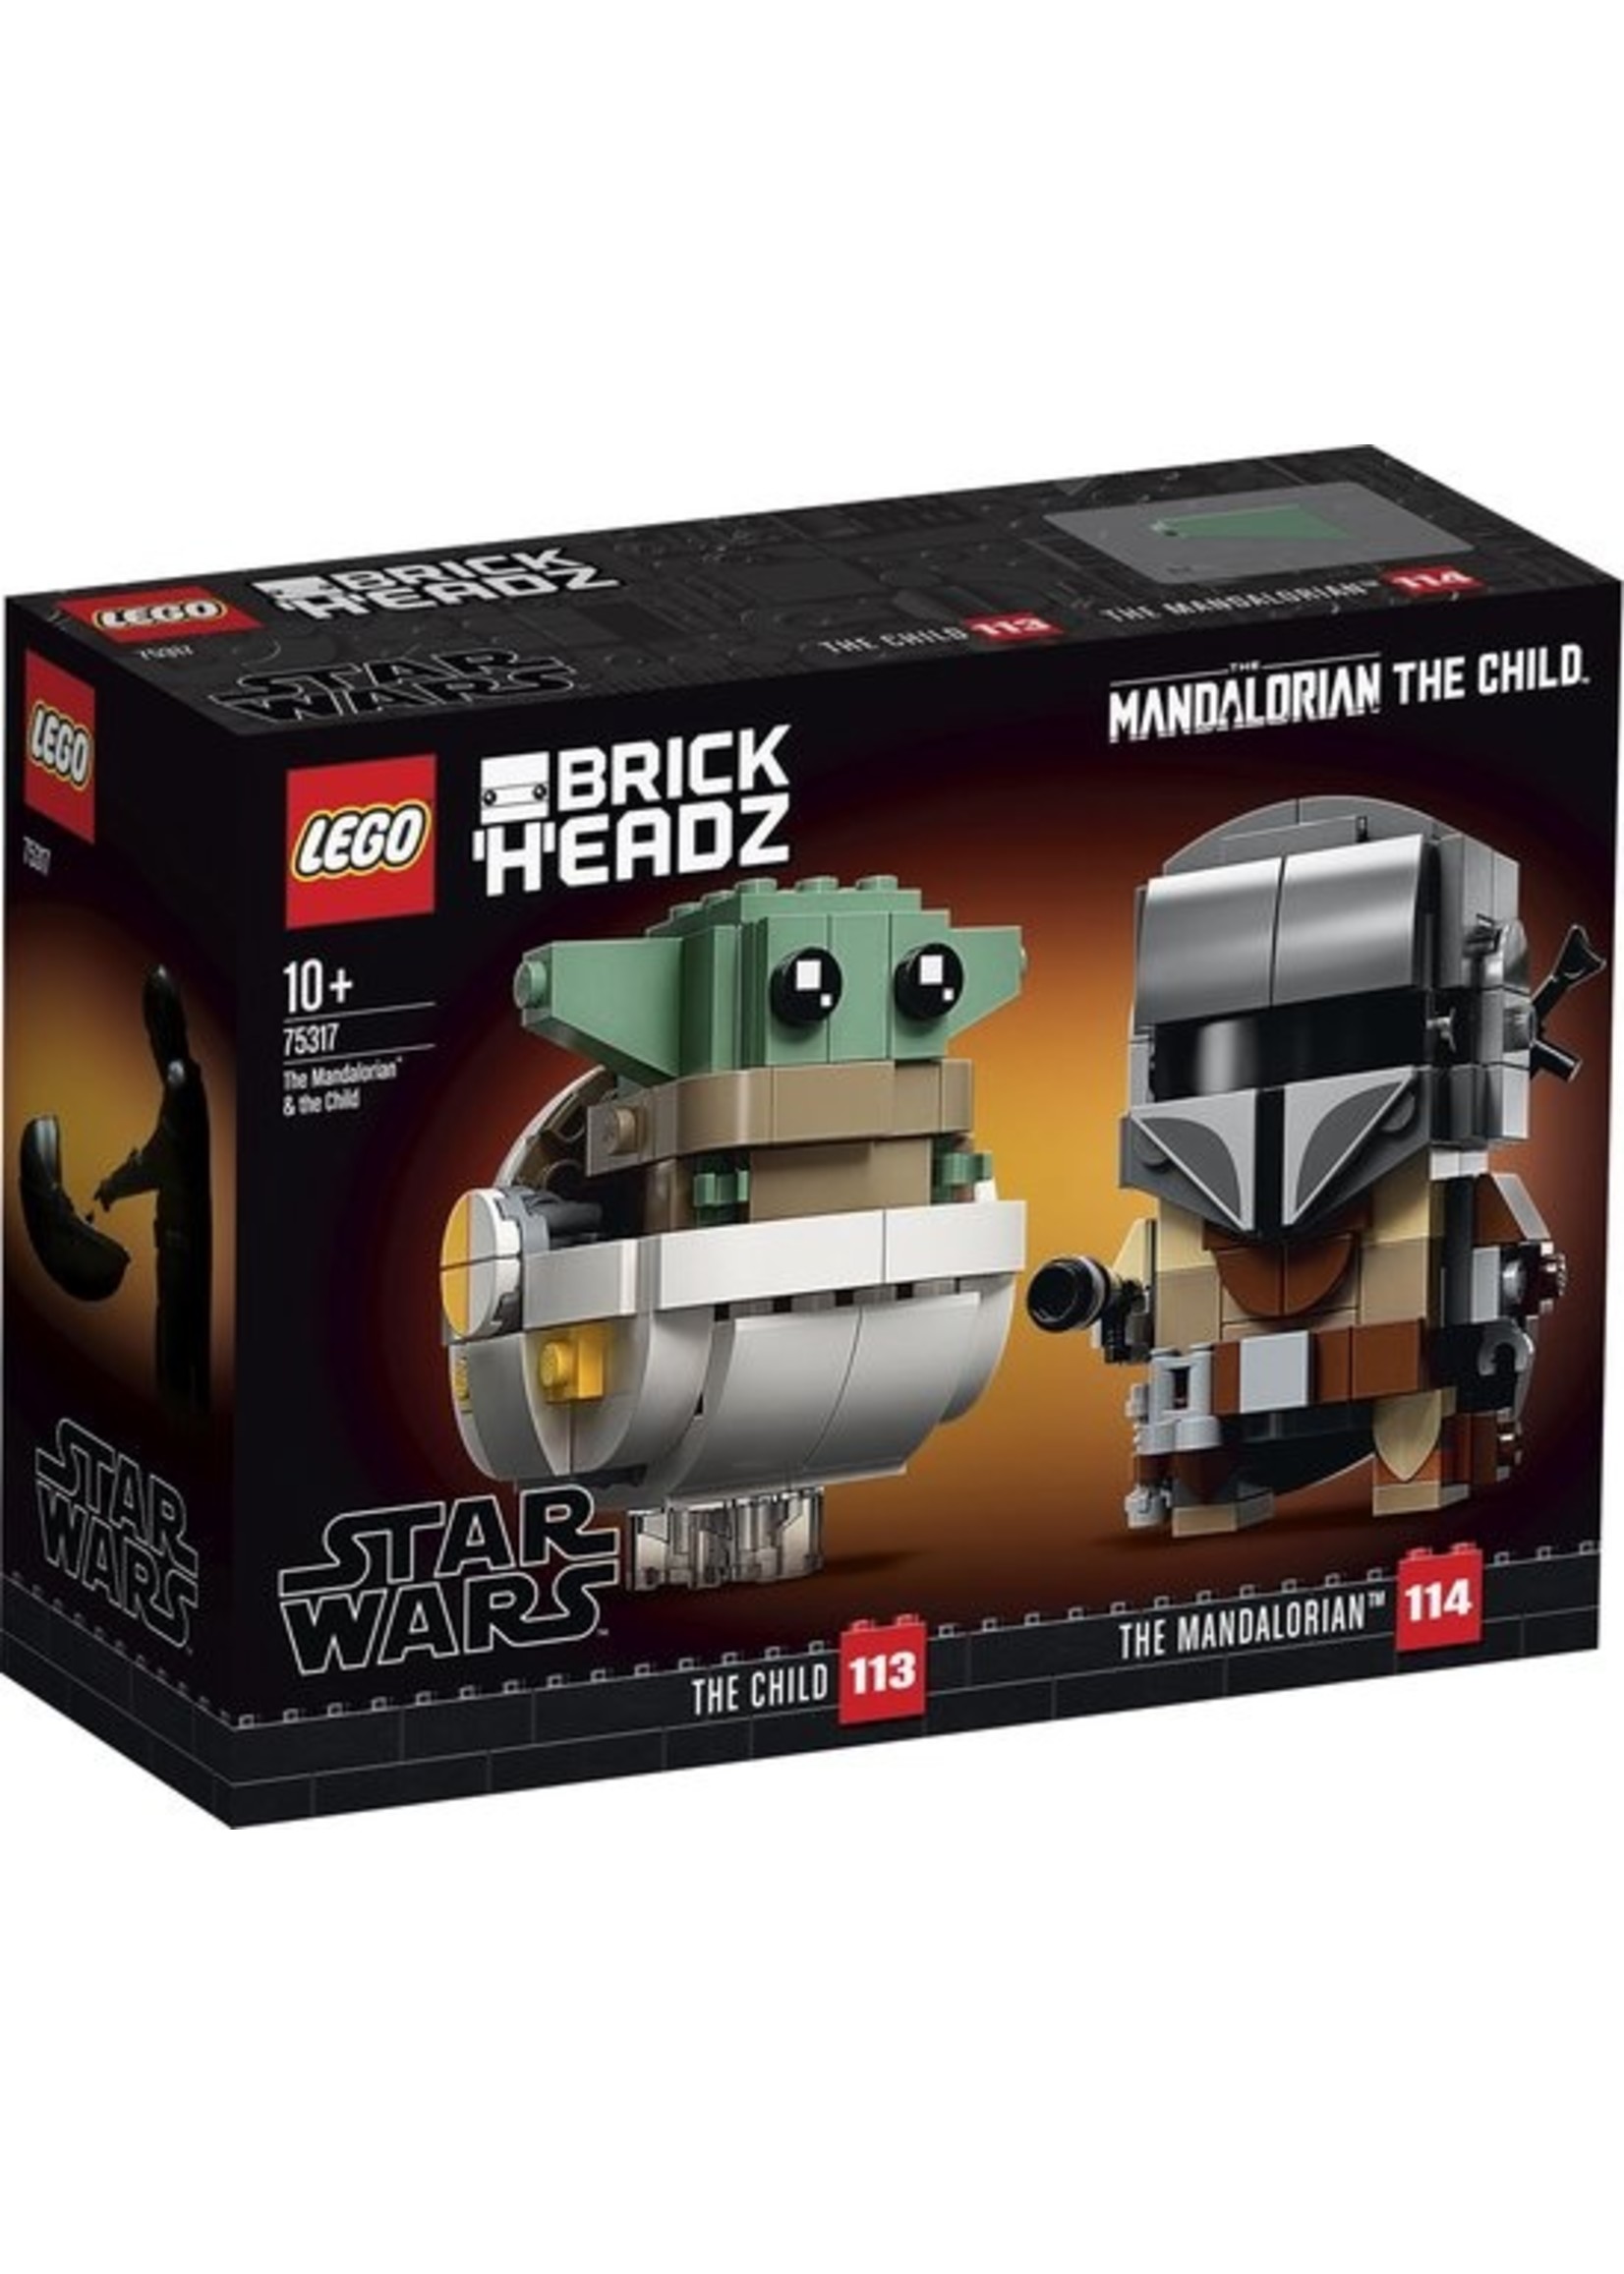 LEGO BrickHeadz Star Wars De Mandalorian & Baby Yoda 75317